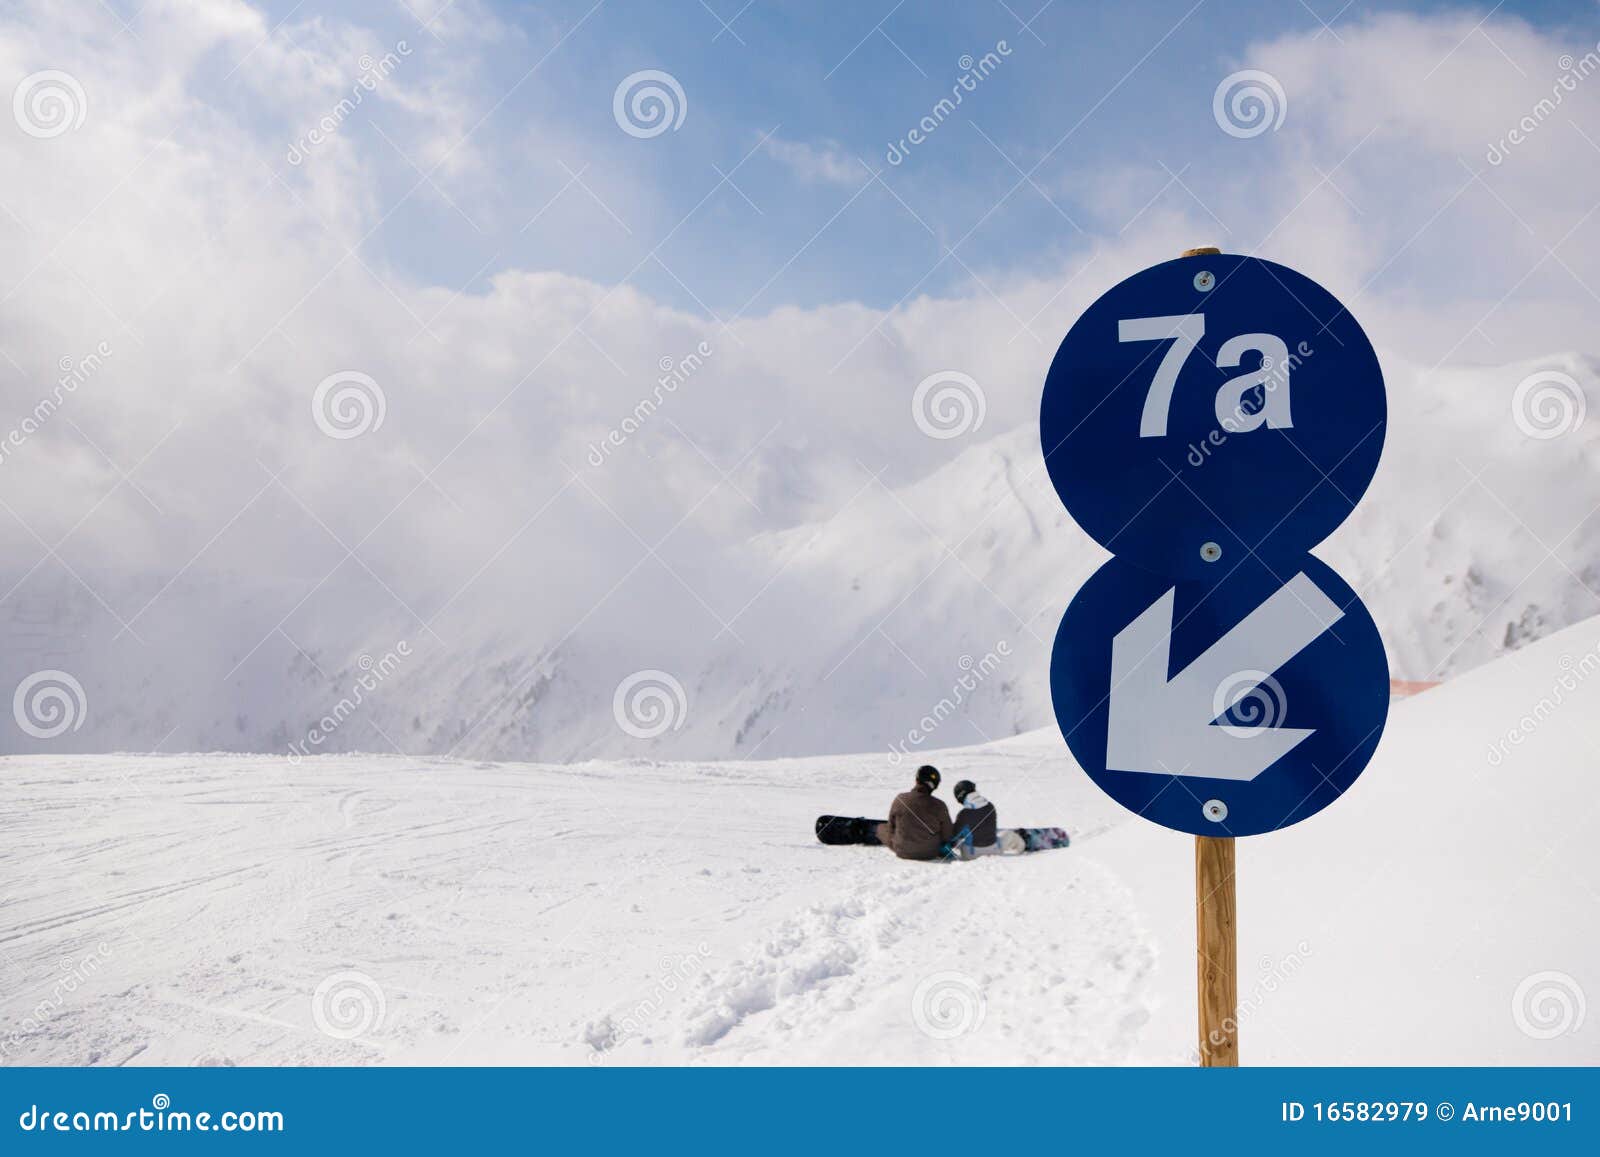 ski piste in the alps